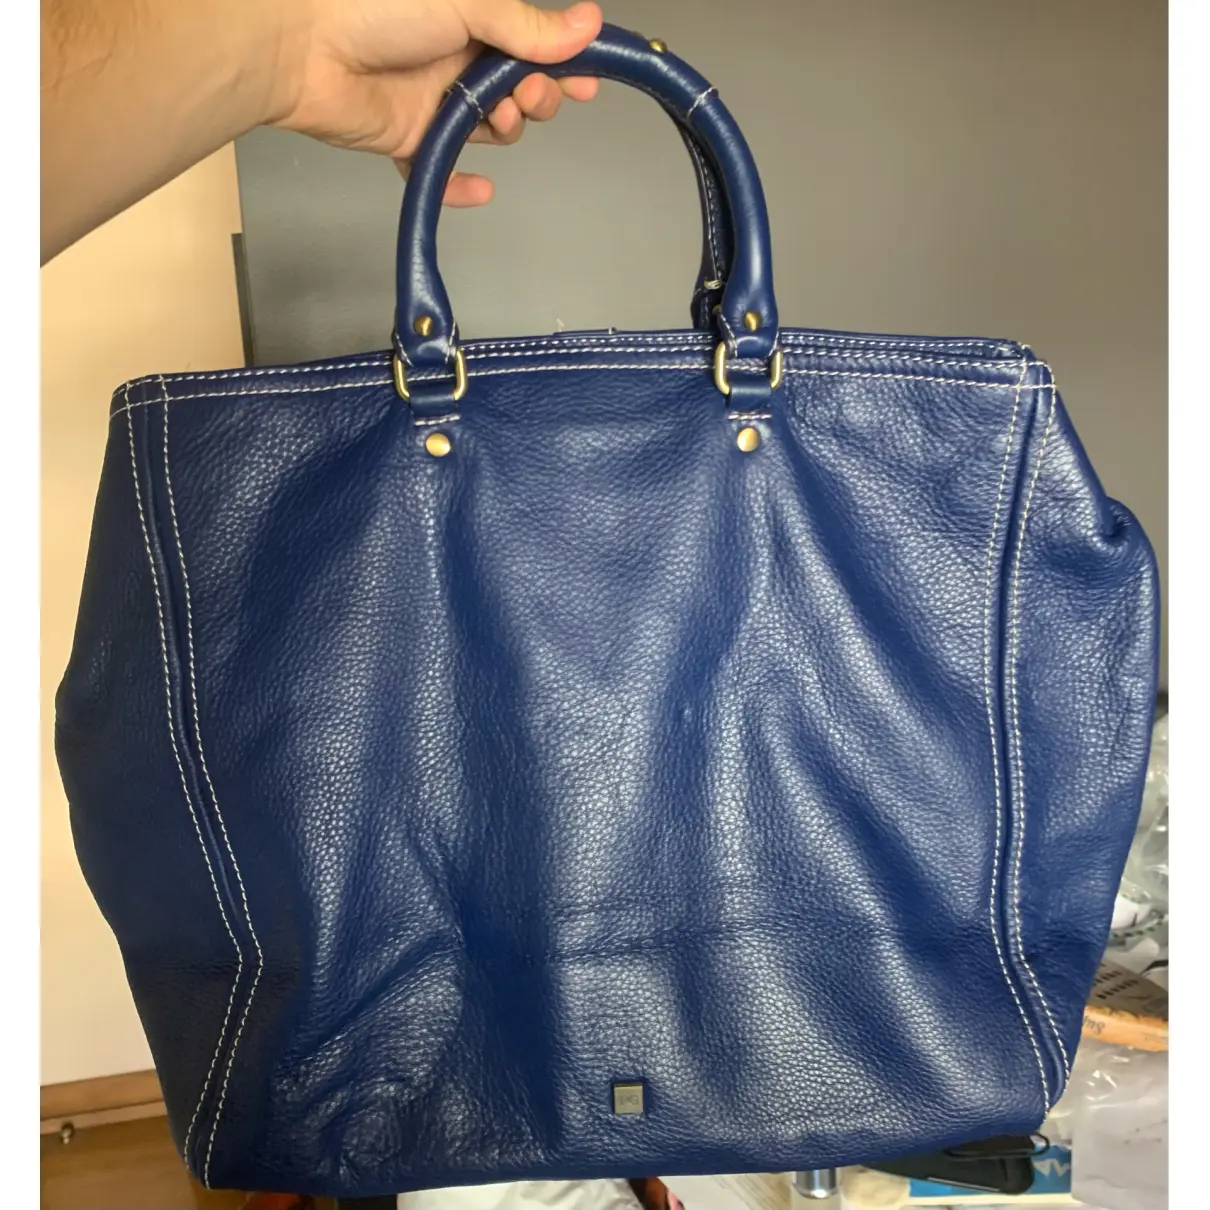 Buy PURIFICACION GARCIA Leather handbag online